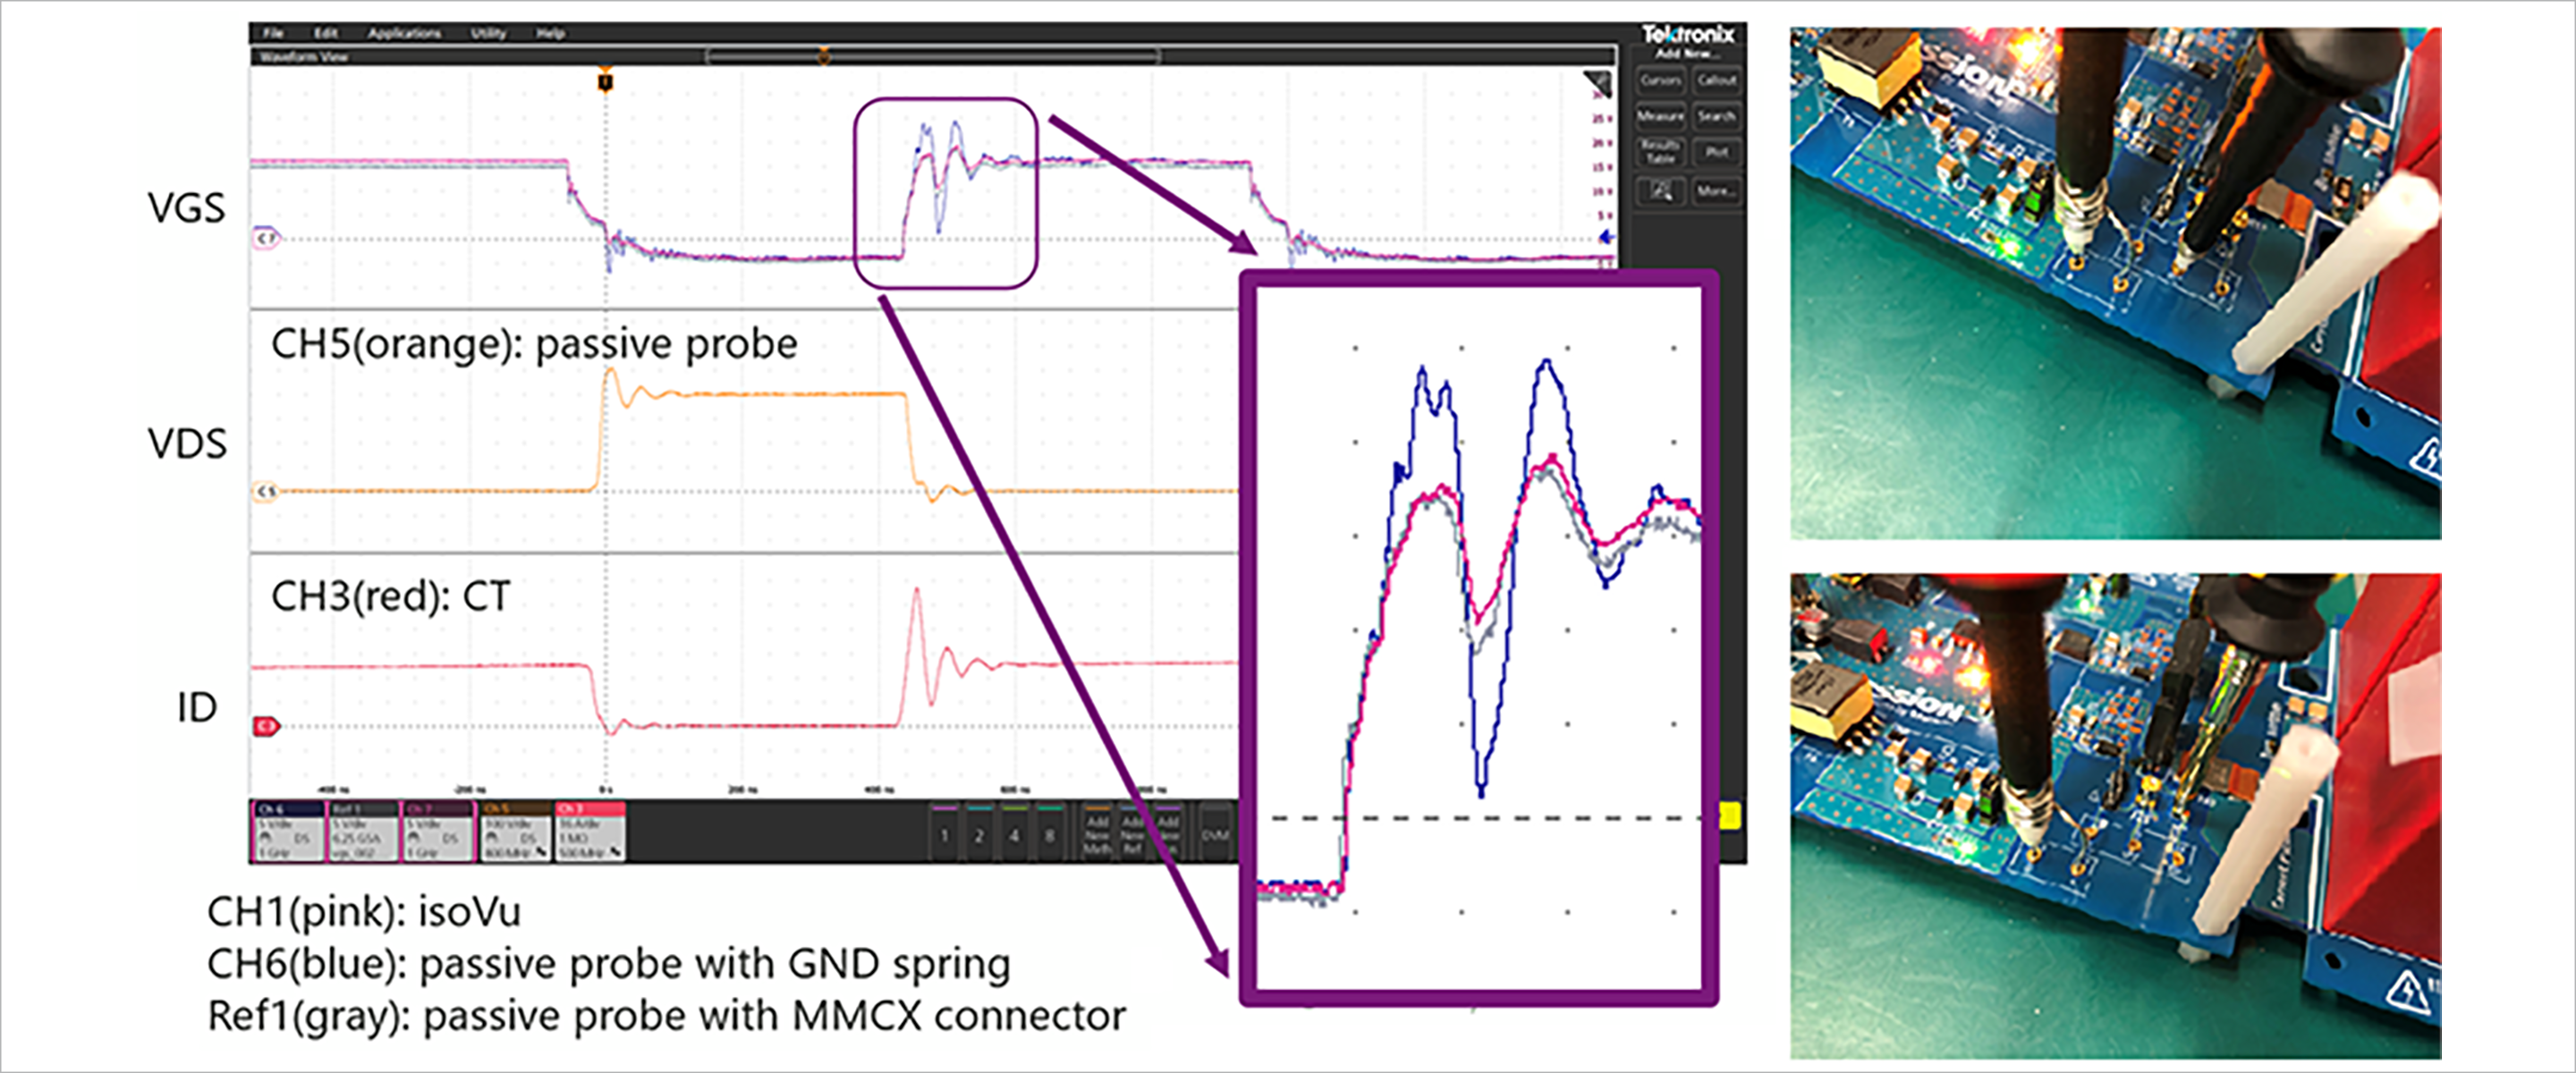 図4：パッシブプローブをGNDスプリング(右上)とMMCXコネクター(右下)で比較